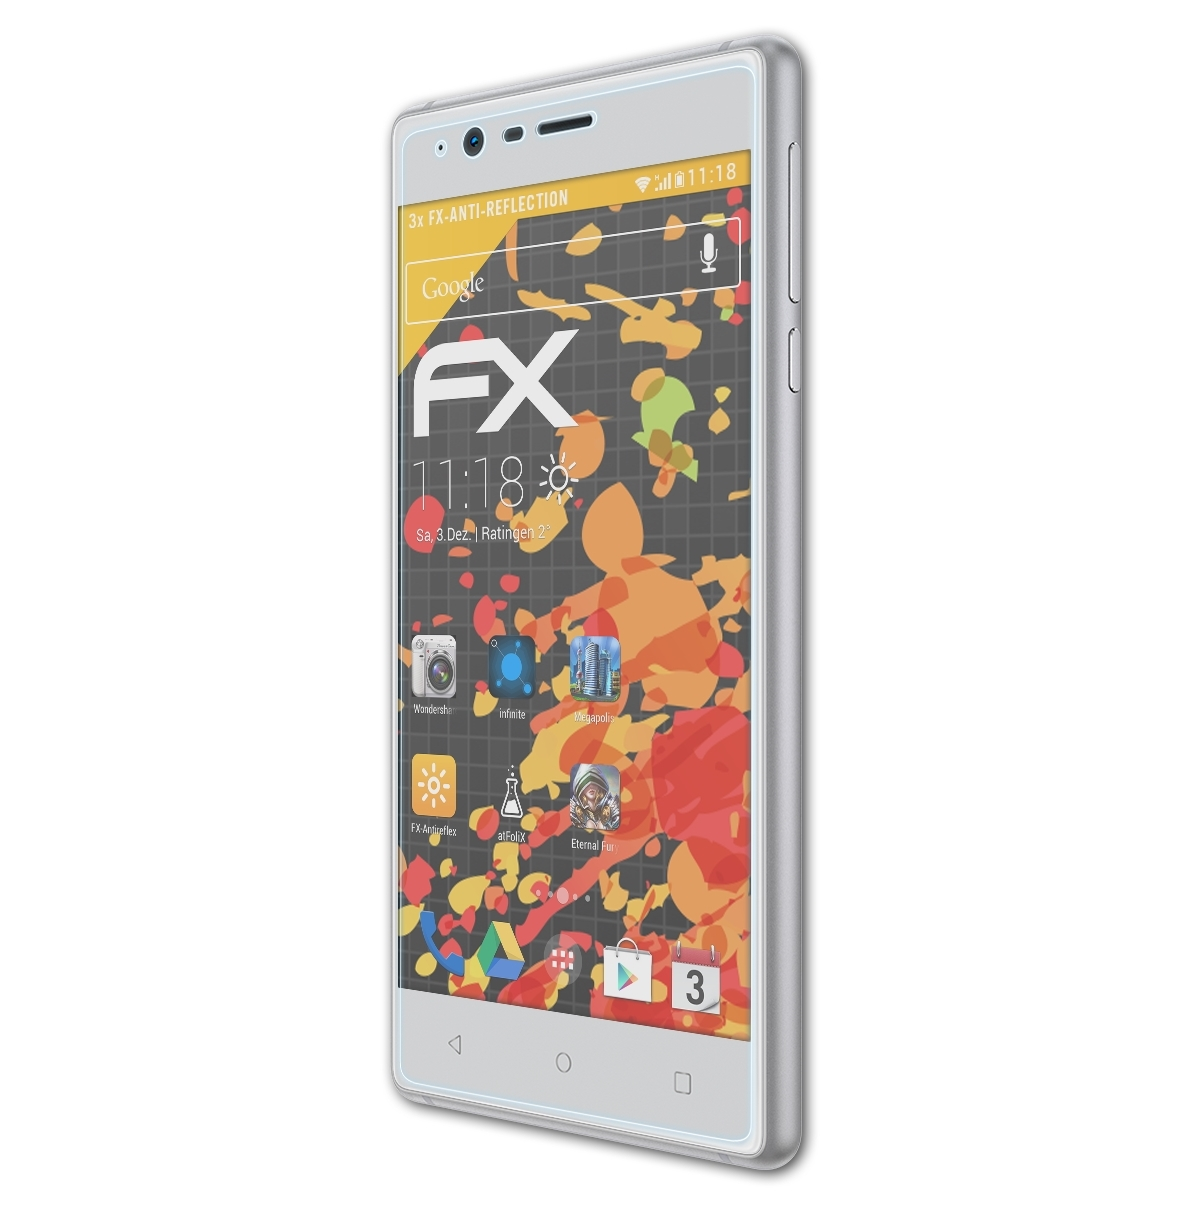 FX-Antireflex Displayschutz(für ATFOLIX 3) Nokia 3x